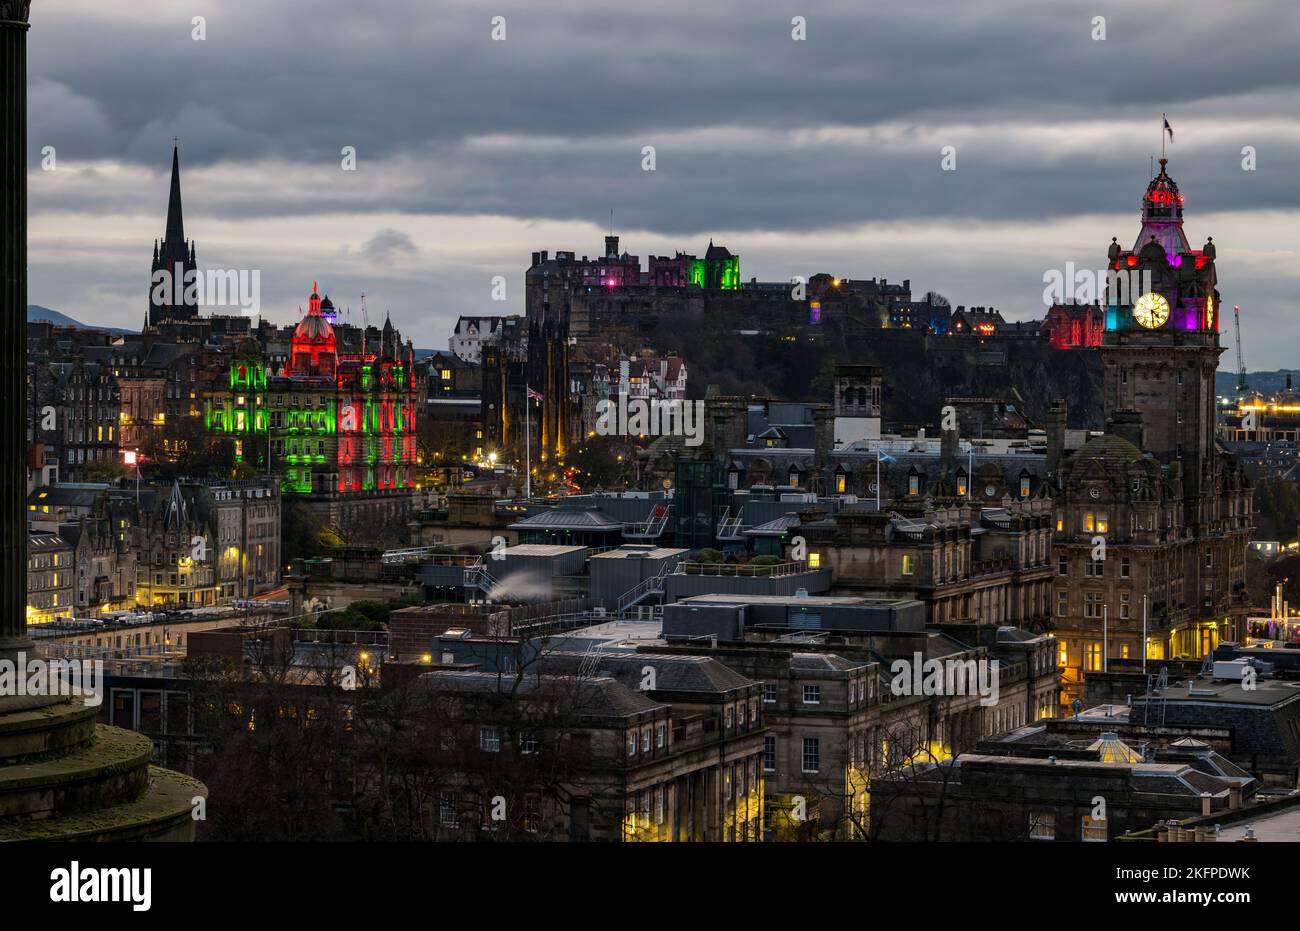 Il castello di Edimburgo, la sede centrale della banca HBoS e la torre dell'orologio del Balmoral Hotel illuminata al crepuscolo, Scozia, Regno Unito Foto Stock